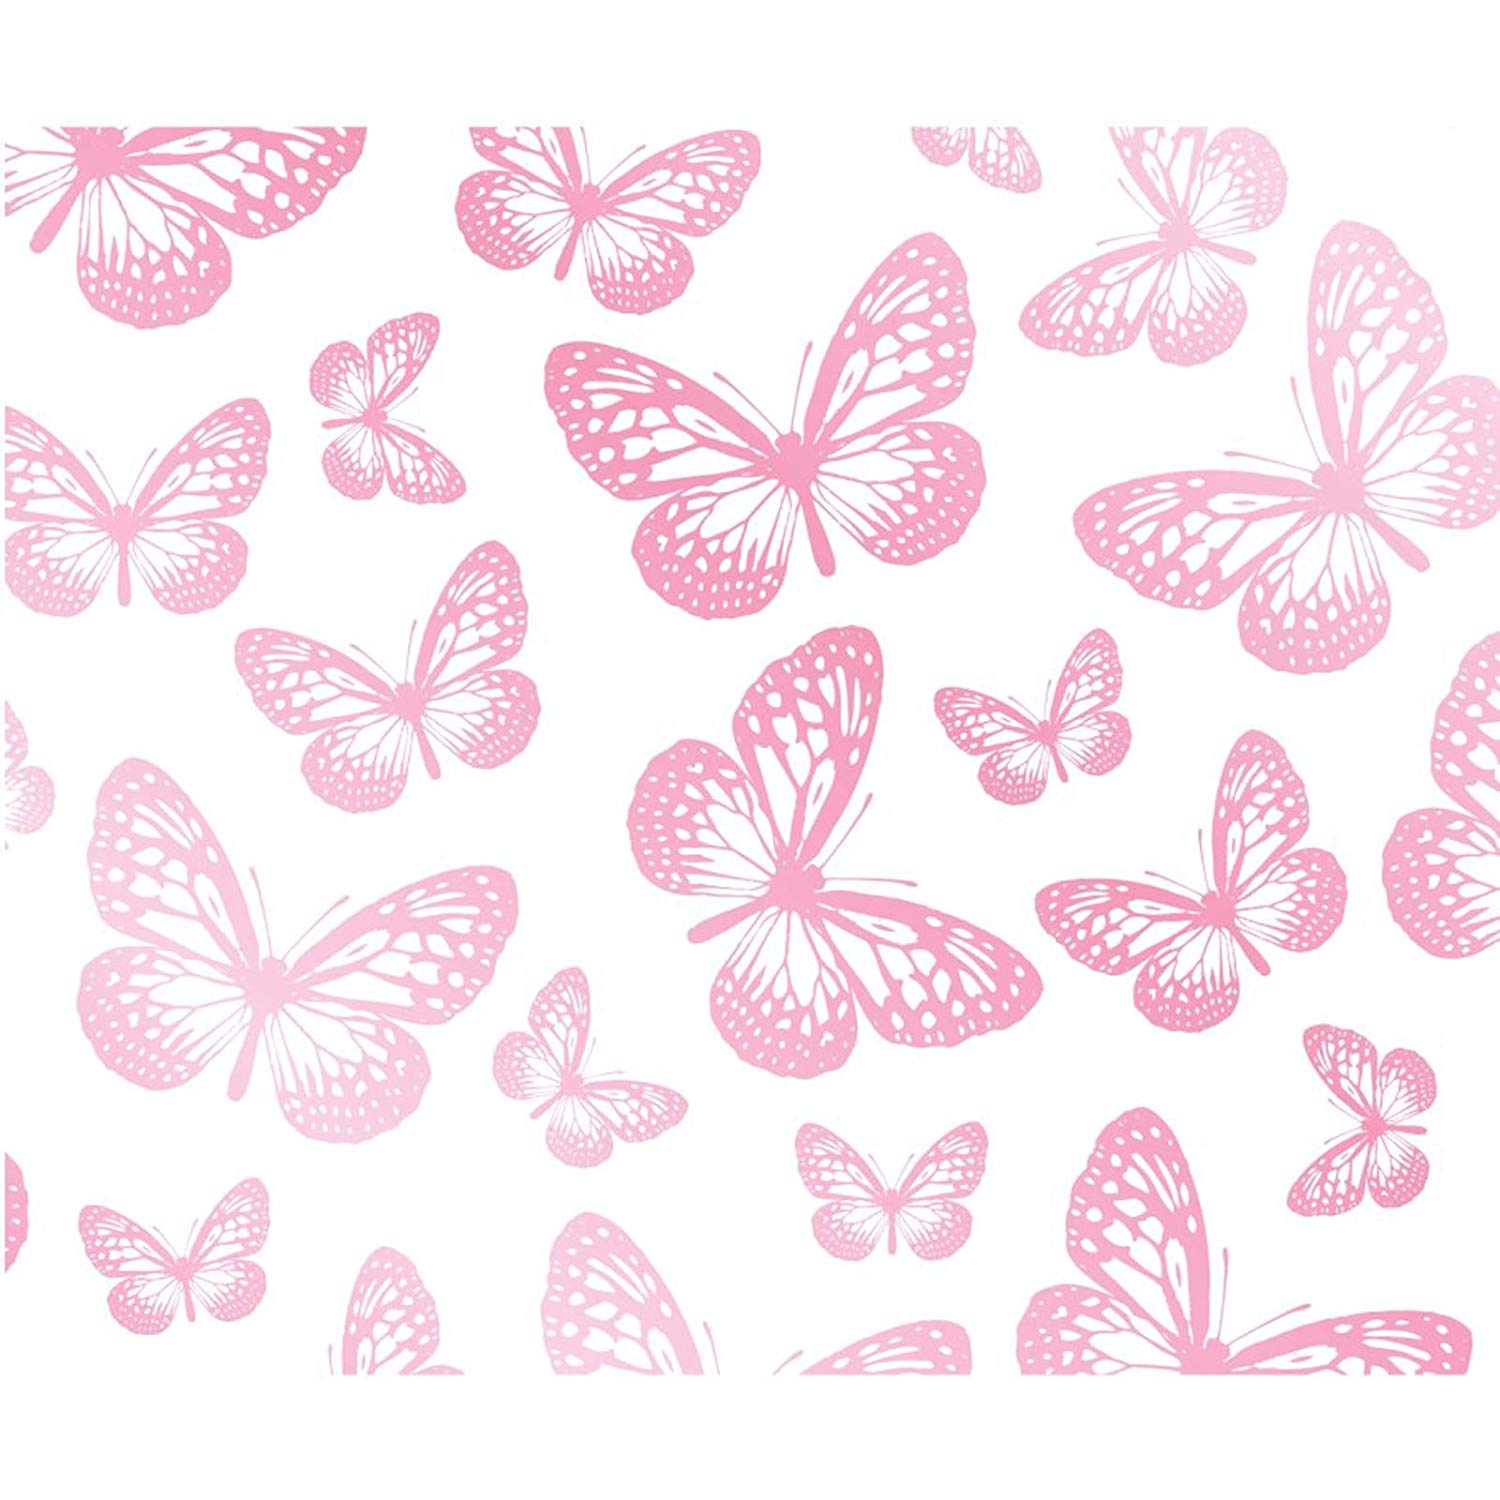 Hình nền bướm hồng: Hình ảnh bướm hồng luôn là sự lựa chọn phổ biến cho những người yêu thích sự dịu dàng và nữ tính. Vì thế, chúng tôi đã tập hợp một bộ sưu tập hình nền bướm hồng để giúp bạn tìm kiếm hình ảnh ưa thích của mình dễ dàng hơn. Các hình ảnh bướm hồng trong bộ sưu tập này đều rất tuyệt đẹp, được thiết kế độc đáo và phù hợp với mọi loại thiết bị. Hãy tìm kiếm ngay những hình ảnh bướm hồng tuyệt đẹp này tại chúng tôi ngay hôm nay.